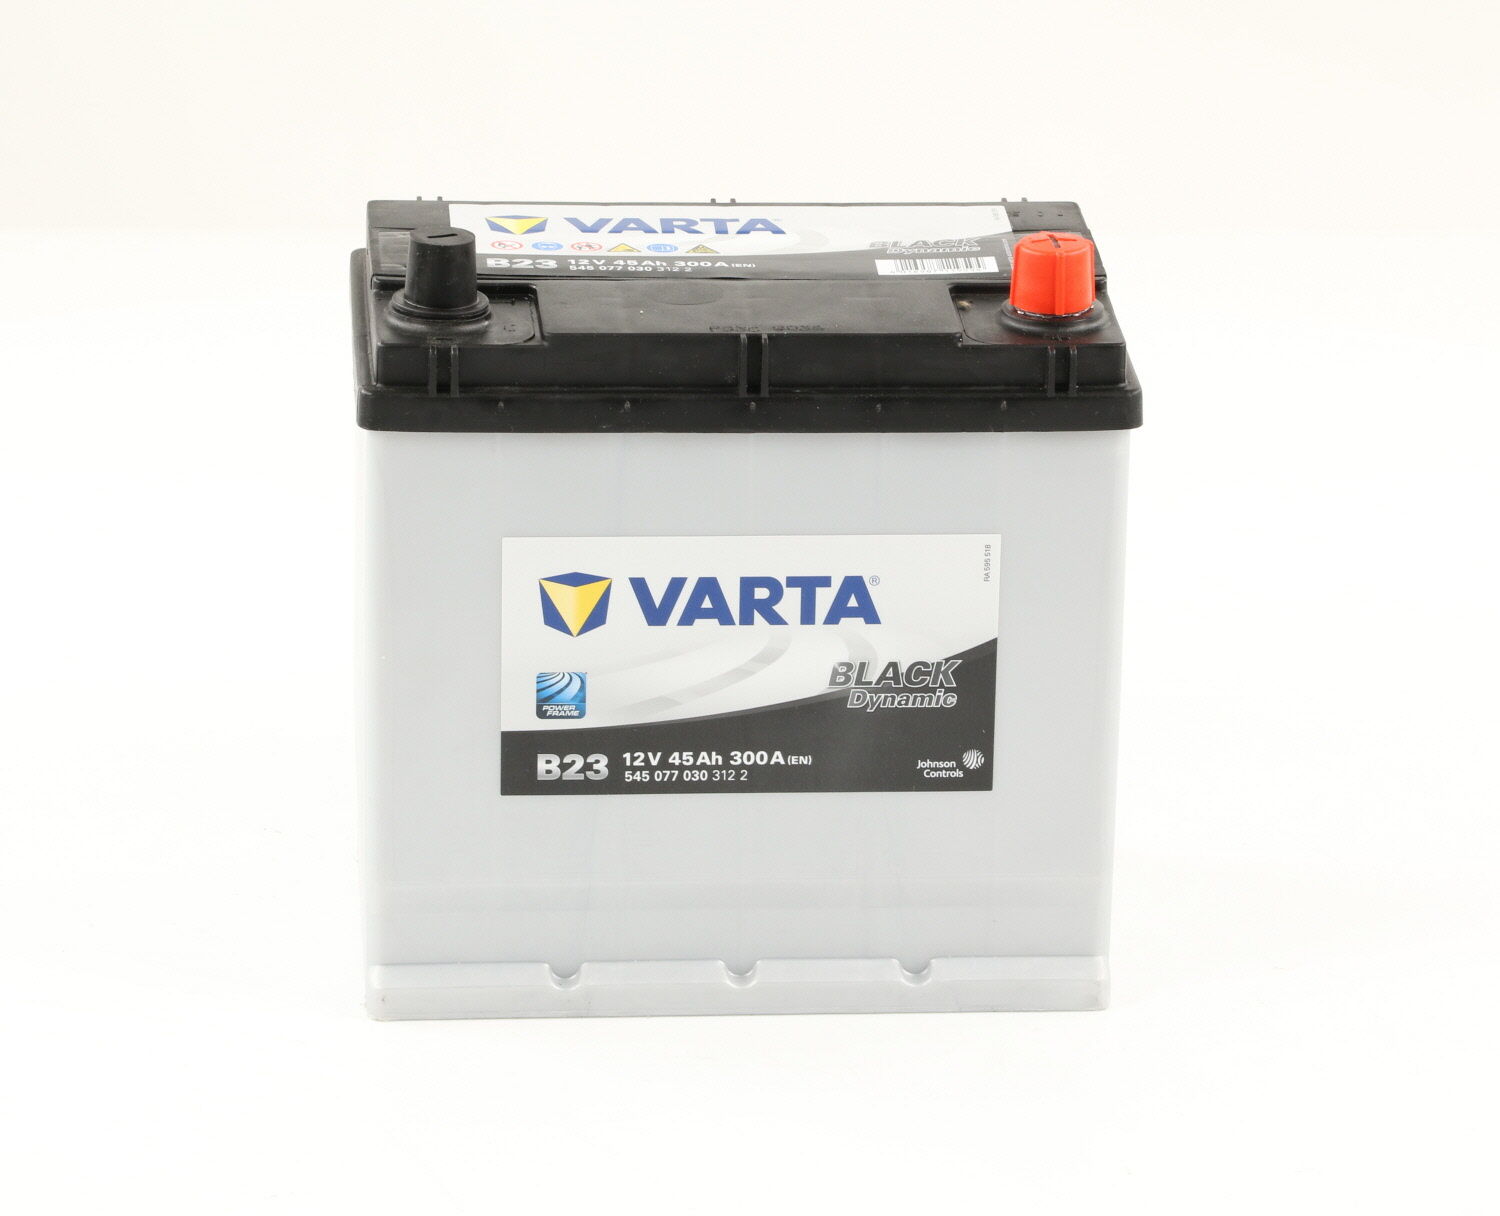 Varta Batería 300.0 A 45.0 Ah 12.0 V Estándar (Ref: 5450770303122)